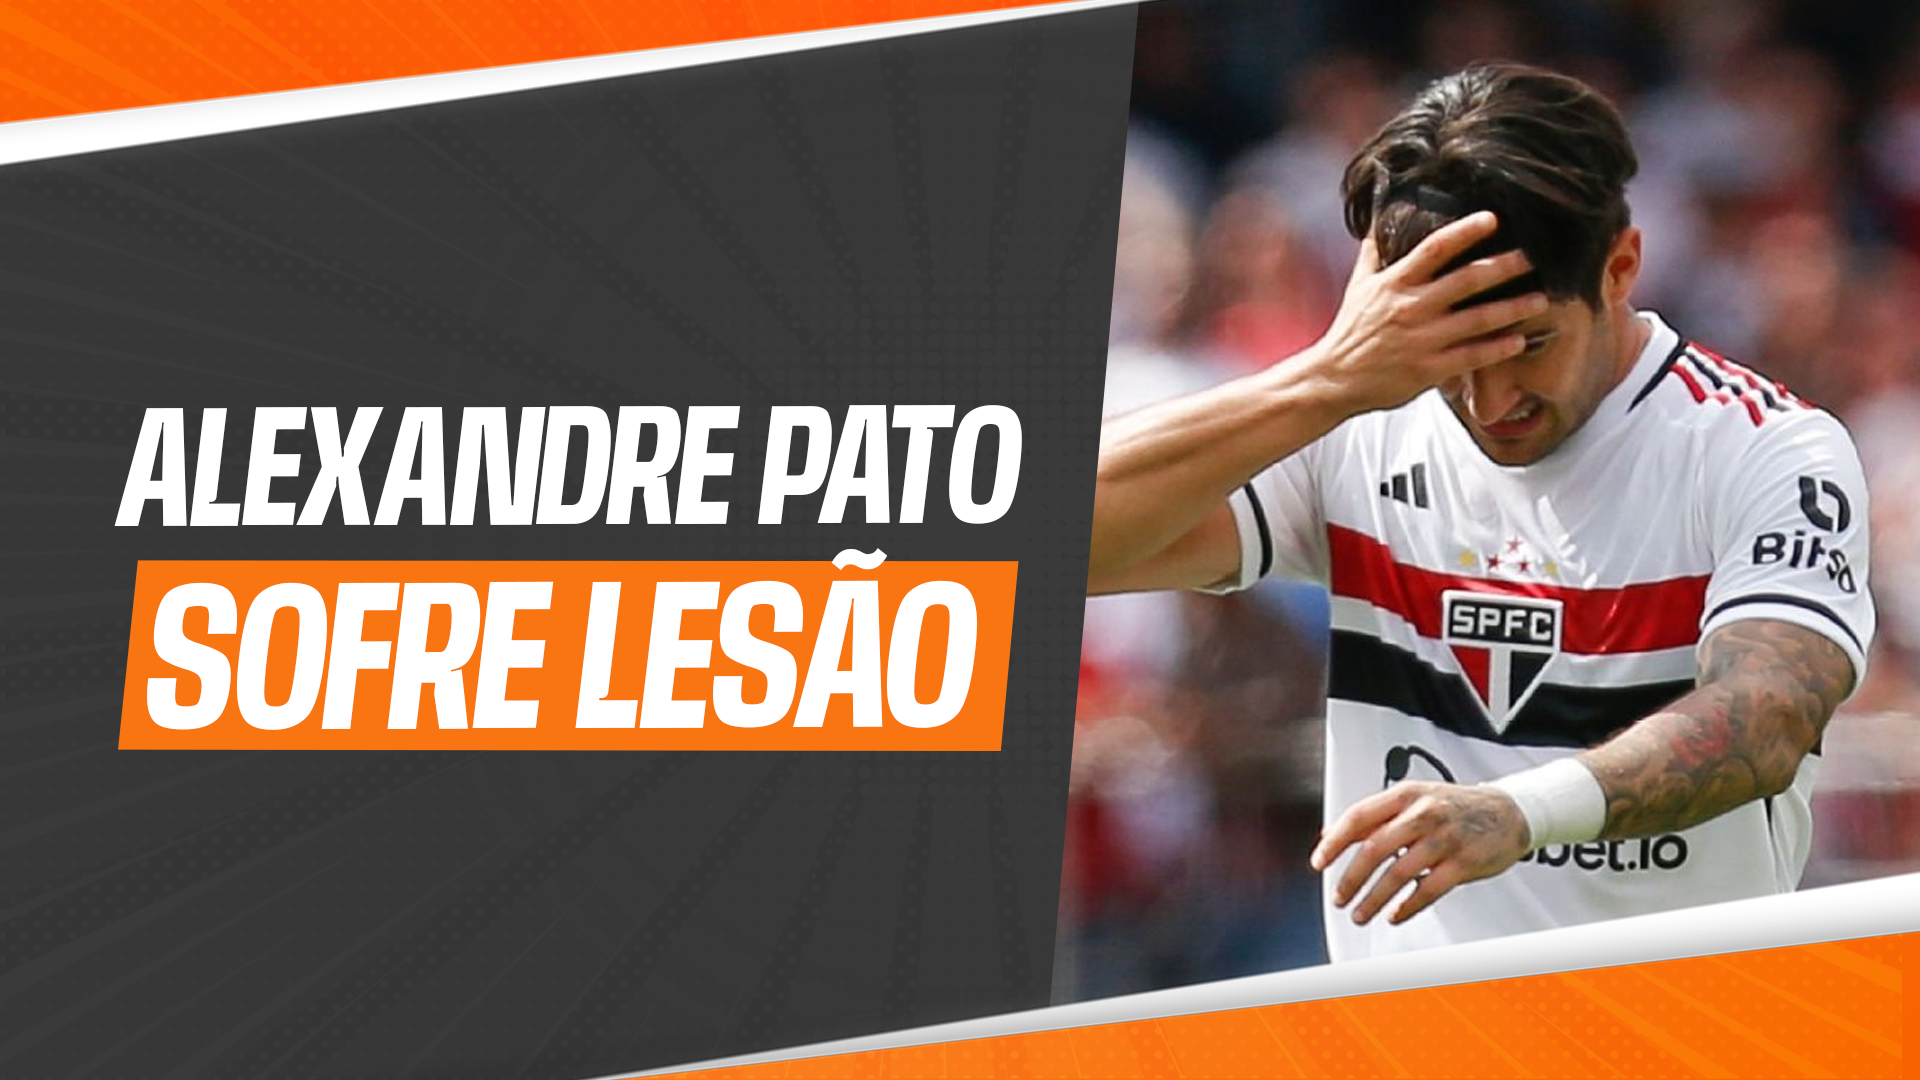 Alexandre Pato, o atacante do São Paulo, sofreu uma lesão na perna, especificamente um estiramento no músculo reto da perna esquerda.